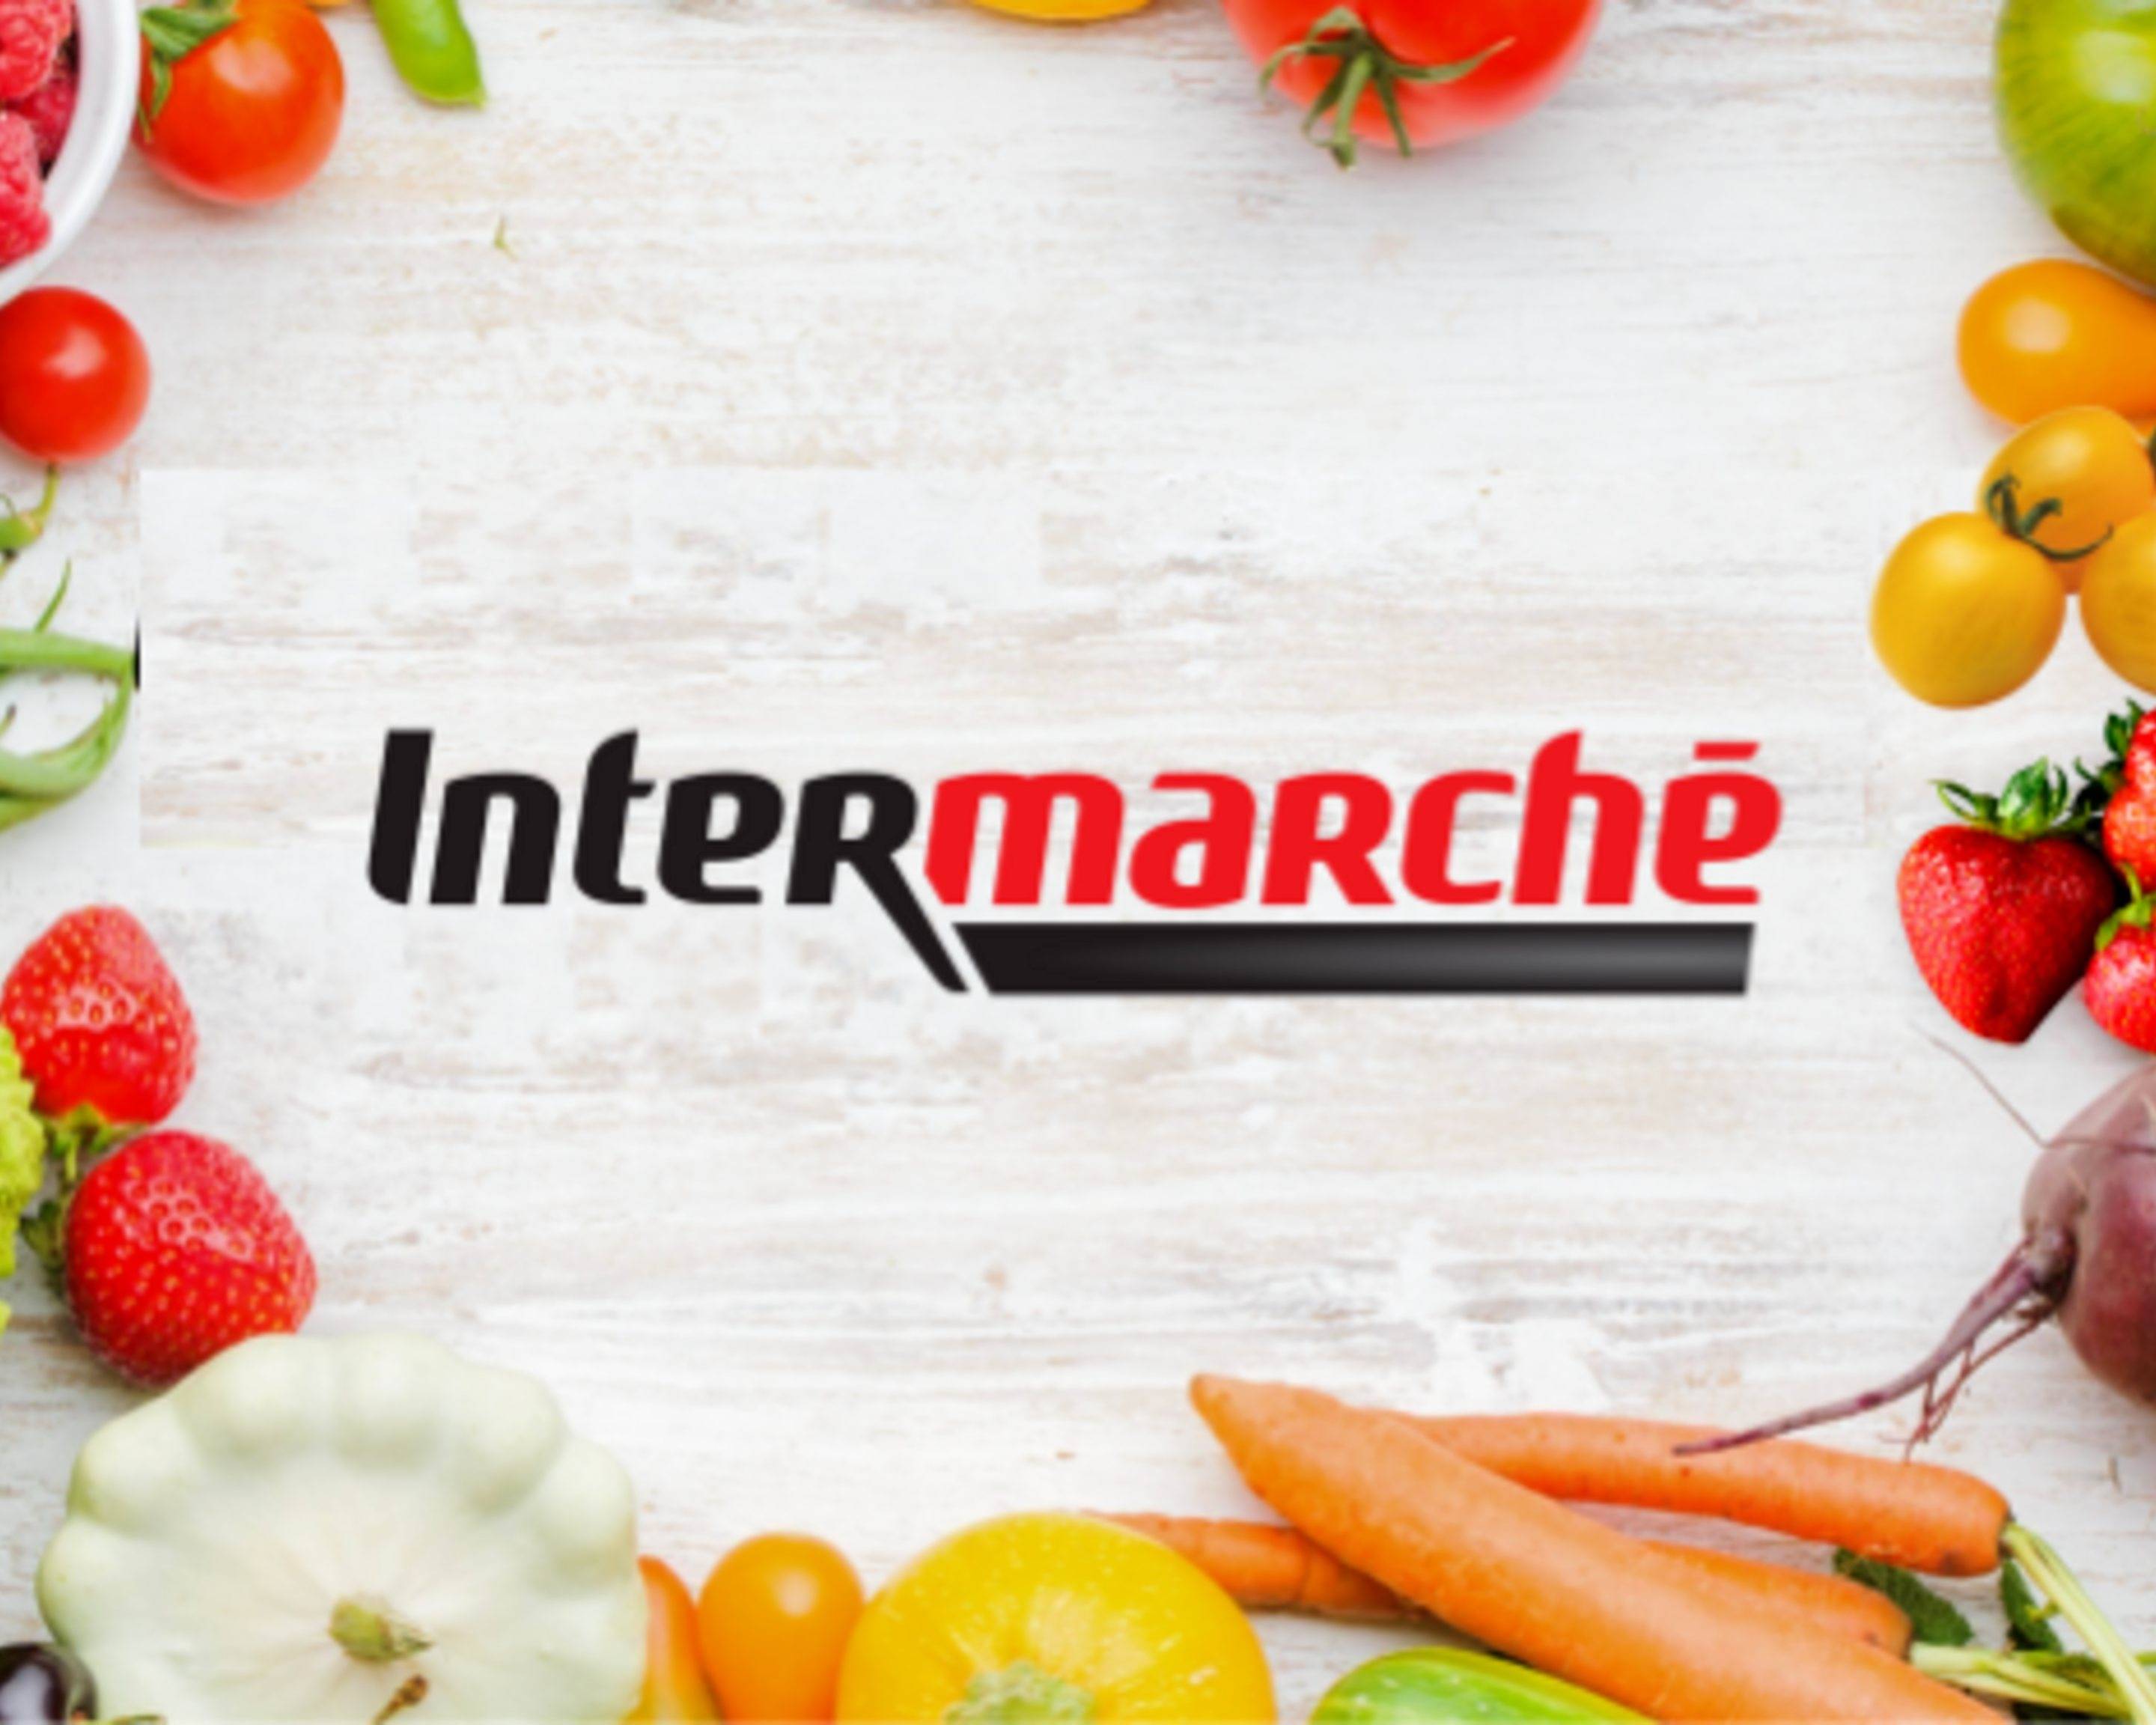 Intermarché - Vitruve Menu Delivery Online, Paris【Menu & Prices】